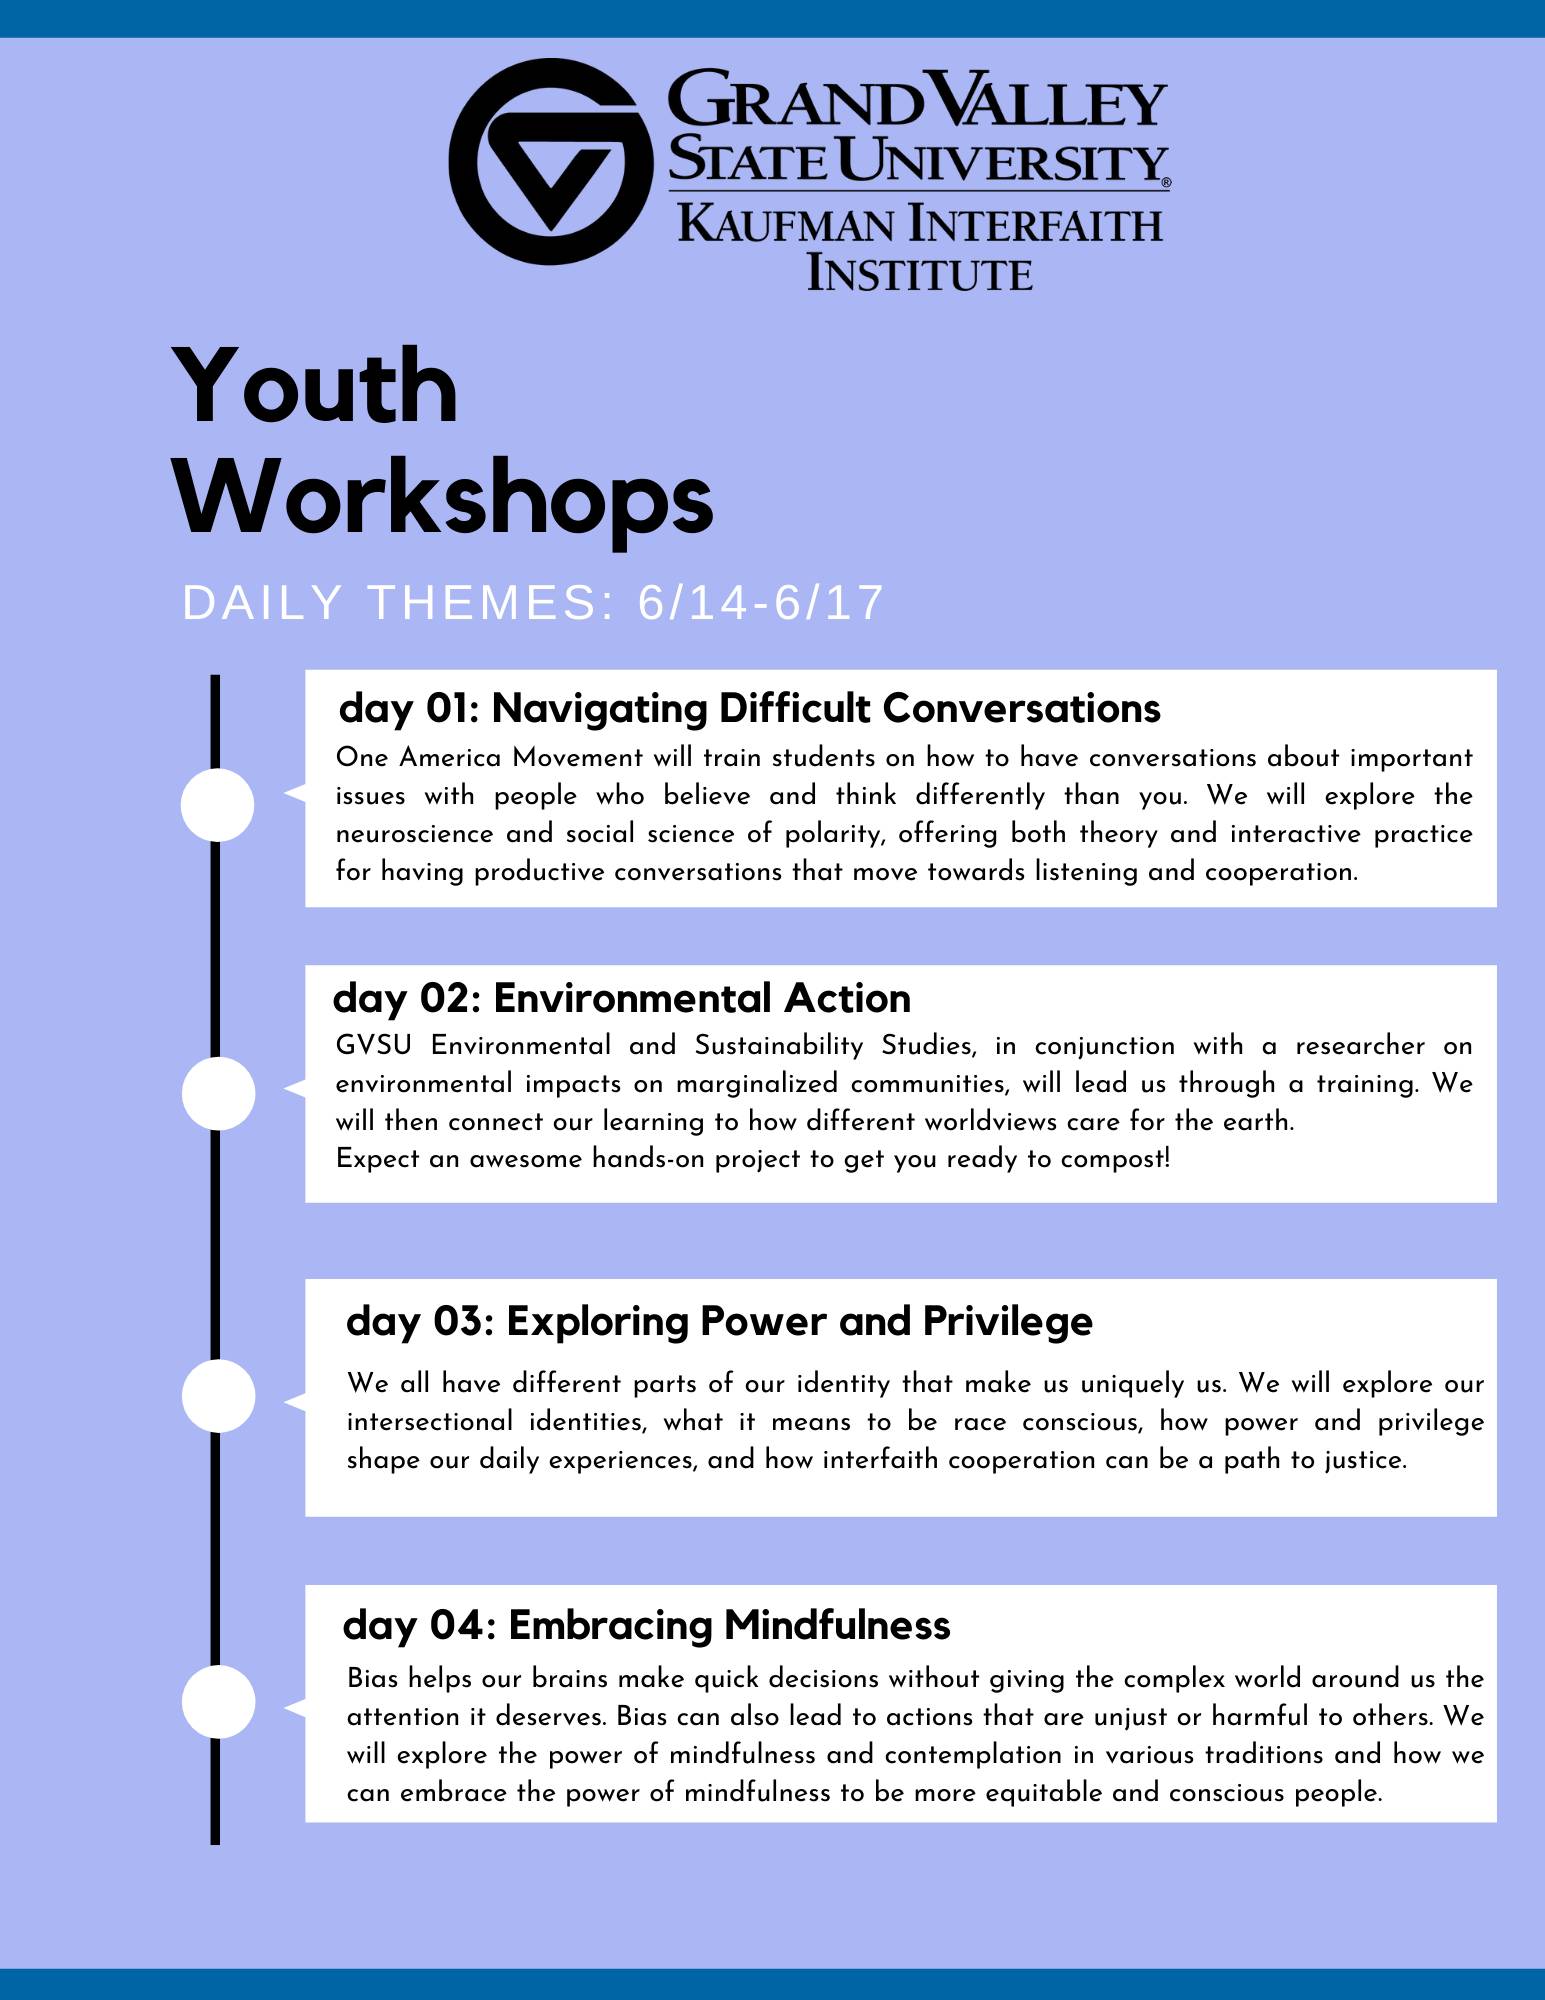 Youth Interfaith Workshop schedule